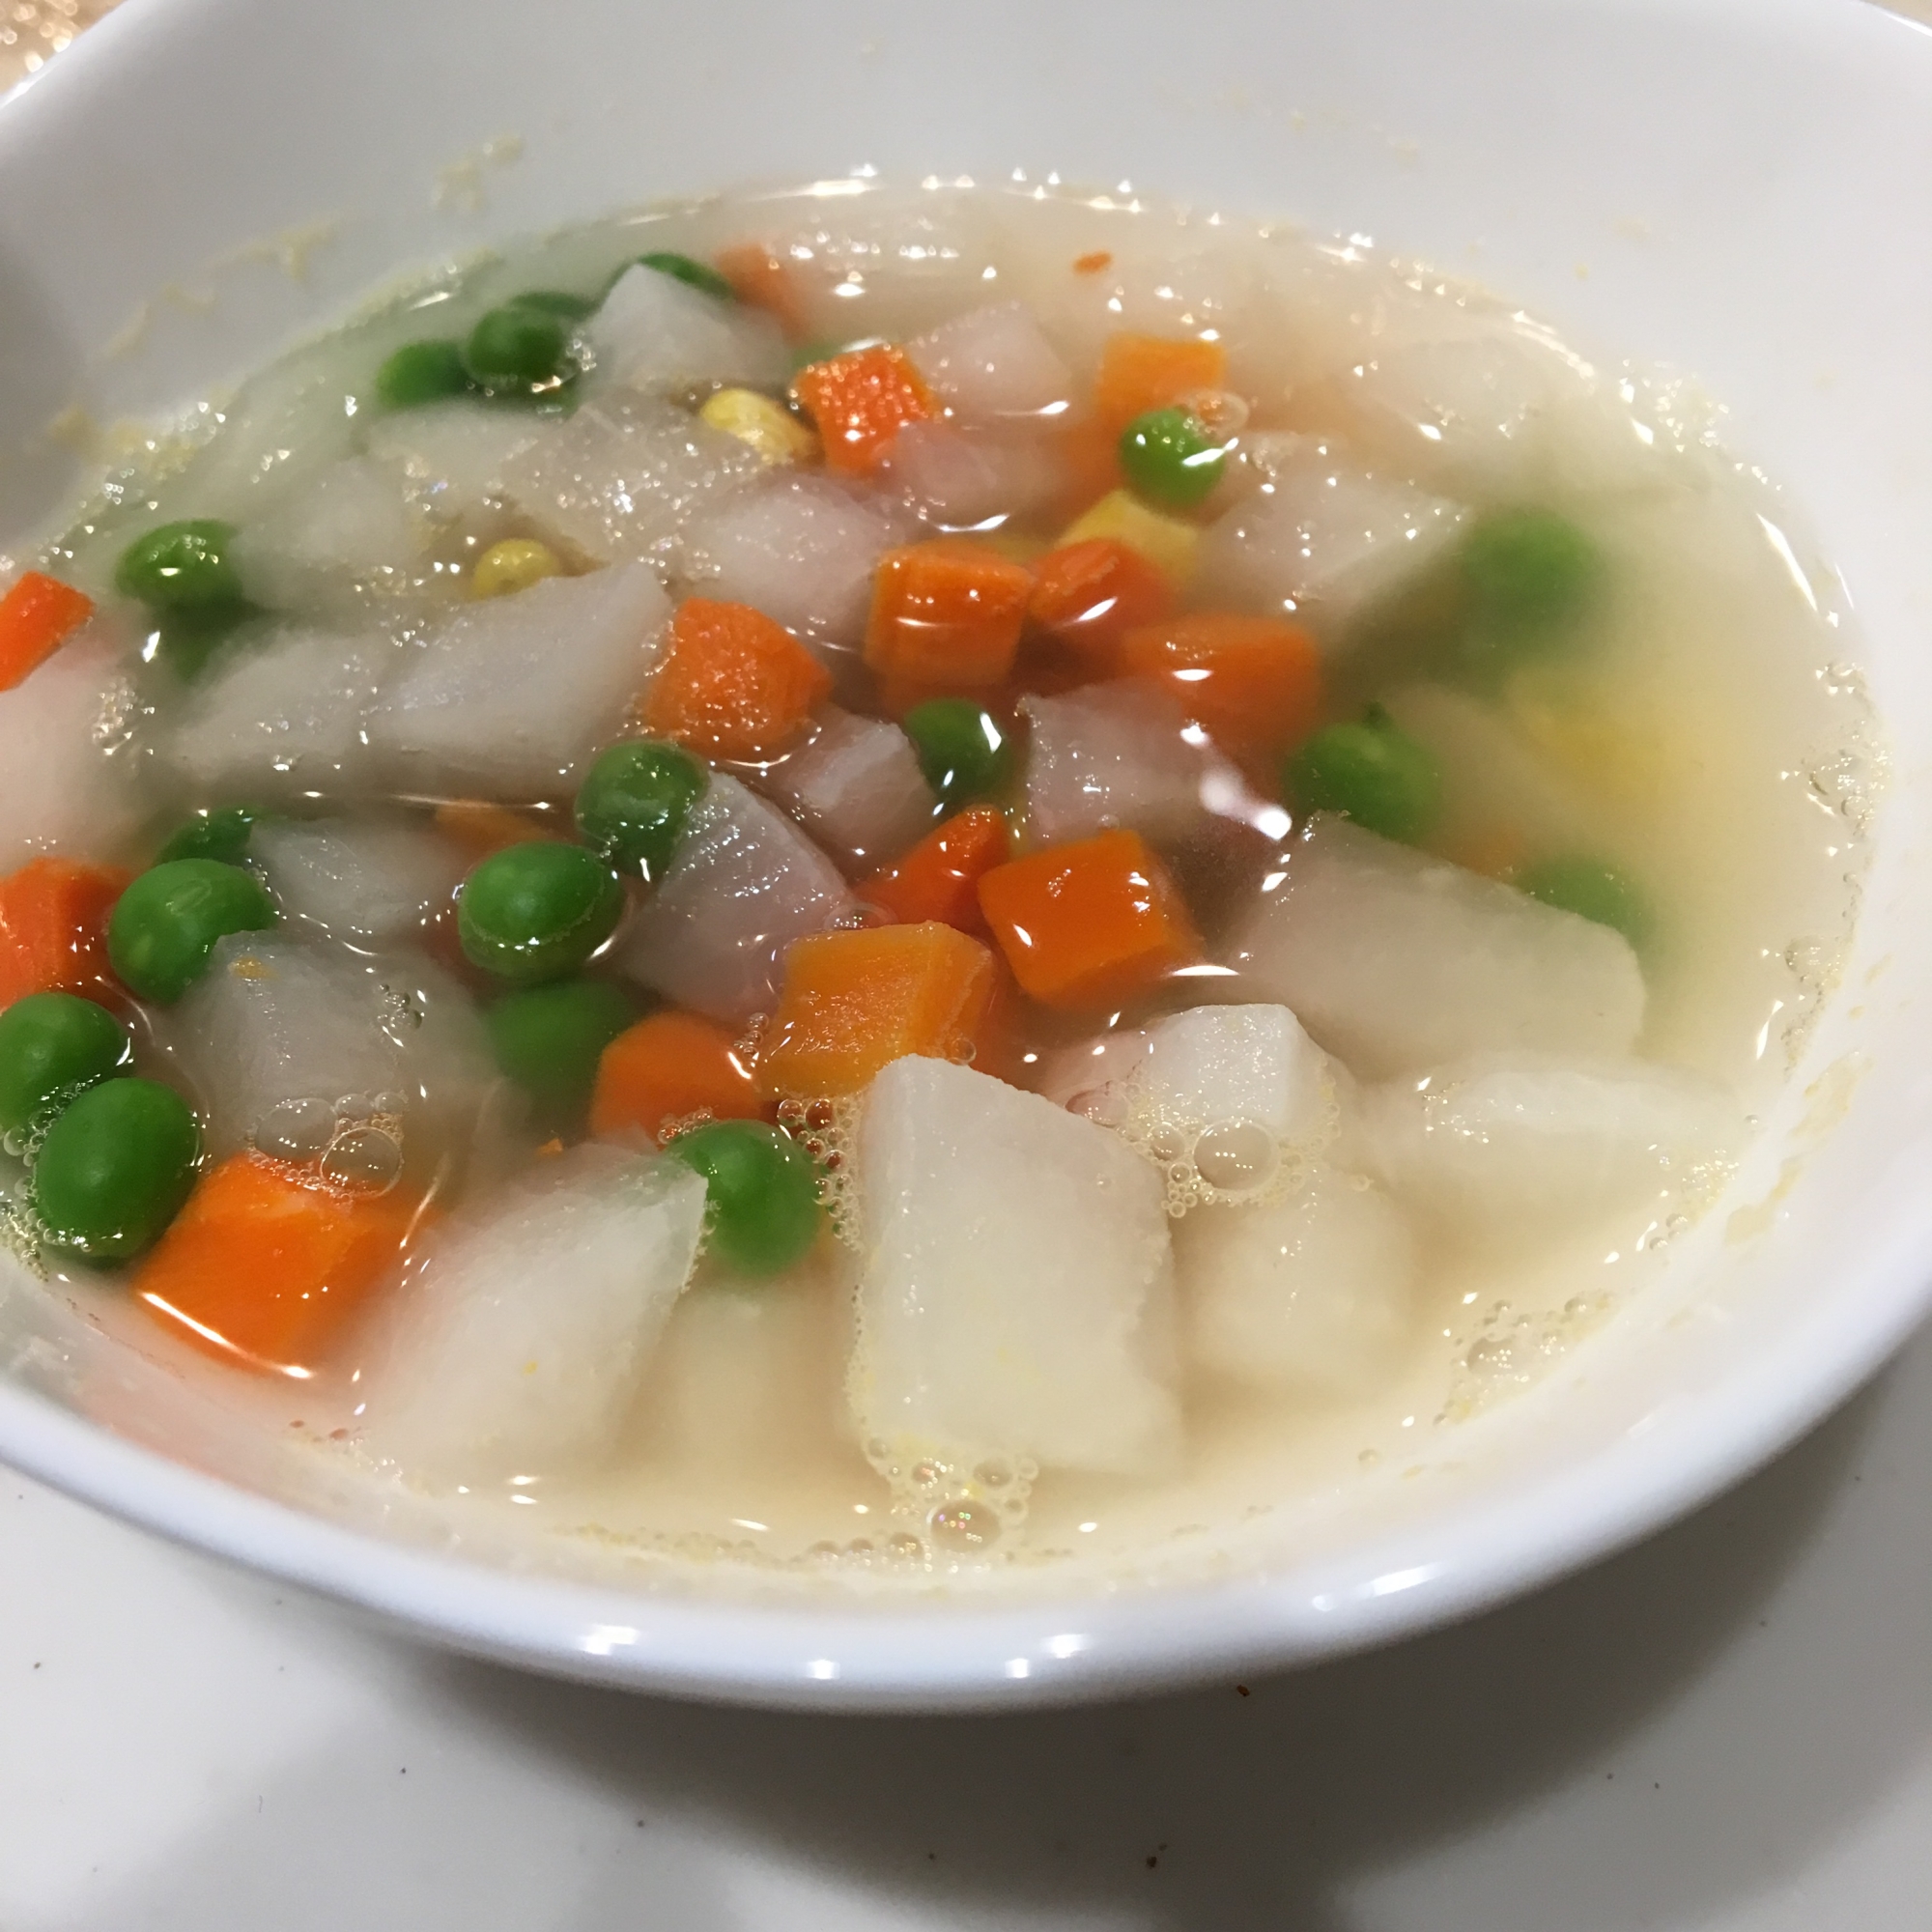 【幼児食】ミックスベジタブルと大根のスープ